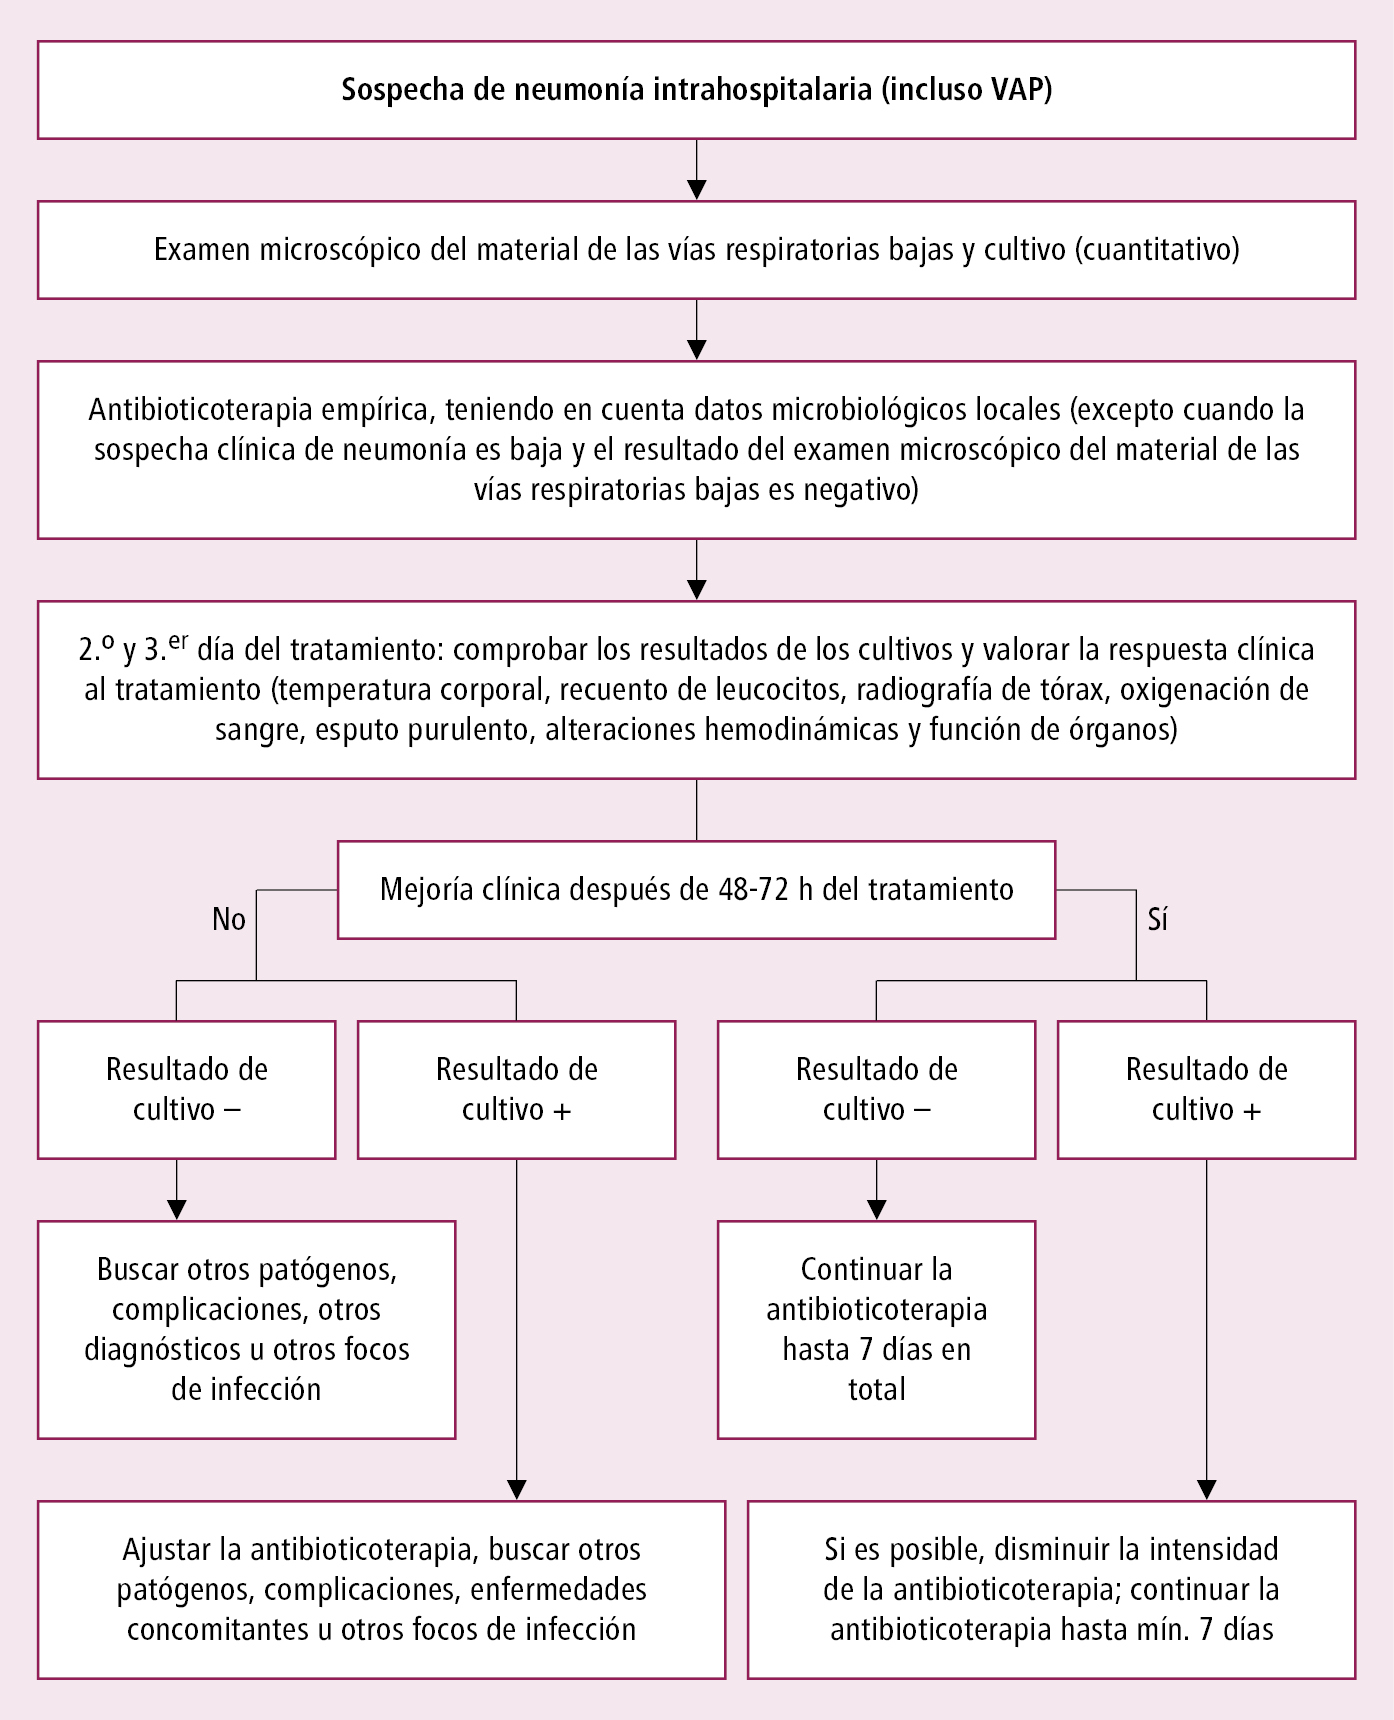    Fig. 3.13-1.  Esquema de estrategia de actuación ante la sospecha de neumonía intrahospitalaria 